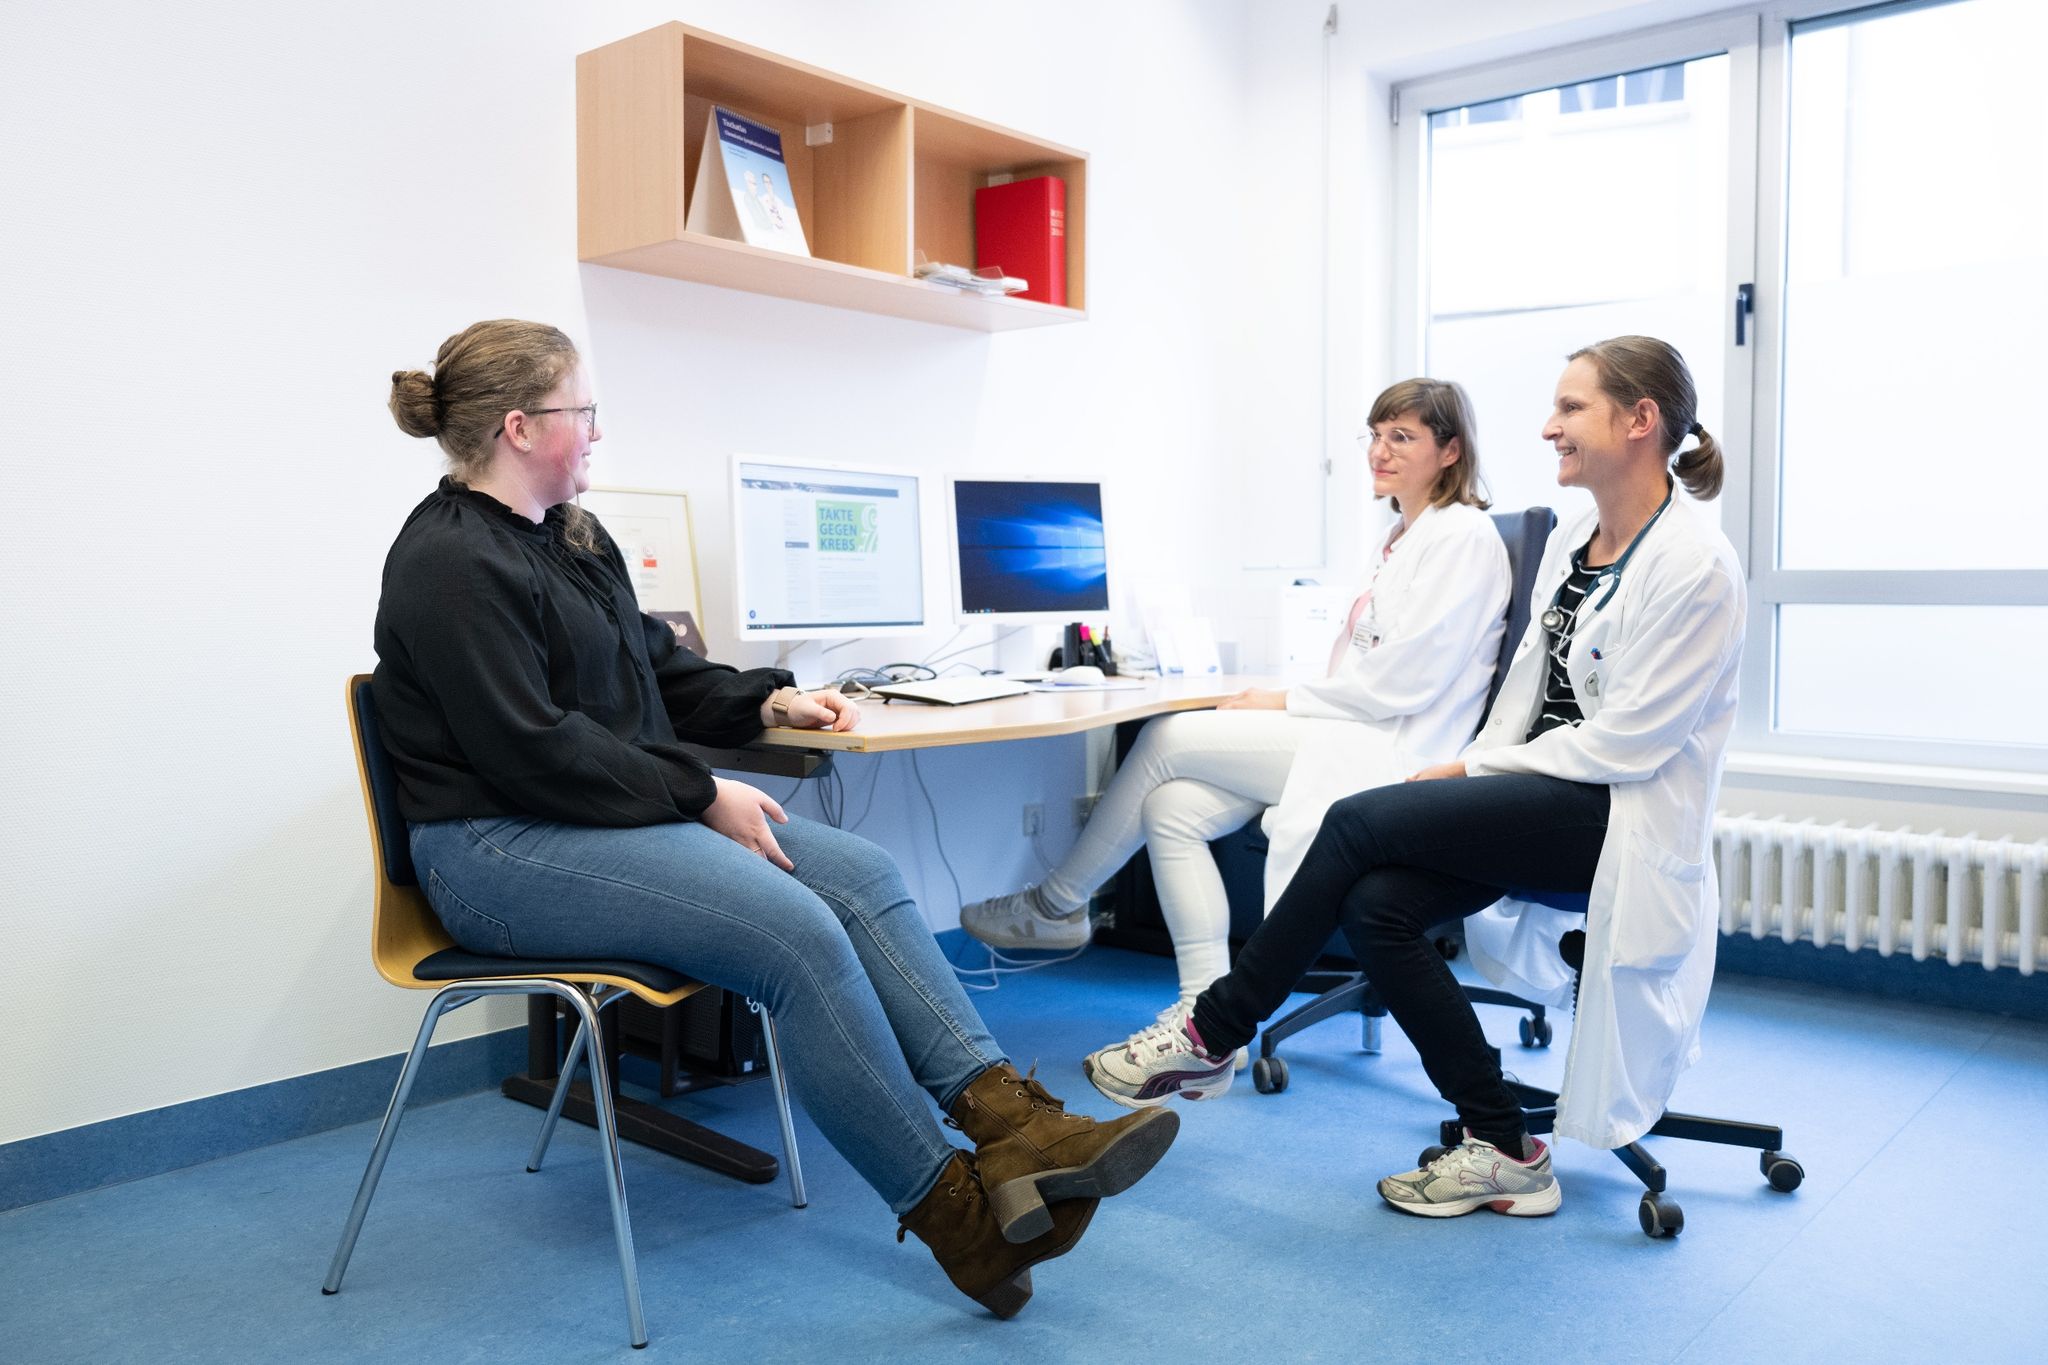 Judith Lohse (r), Kinderärztin, und Katharina Egger-Heidrich, Fachärztin Onkologie, sitzen mit einer Patientin im Nationalen Centrum für Tumorerkrankungen in einem Behandlungsraum.